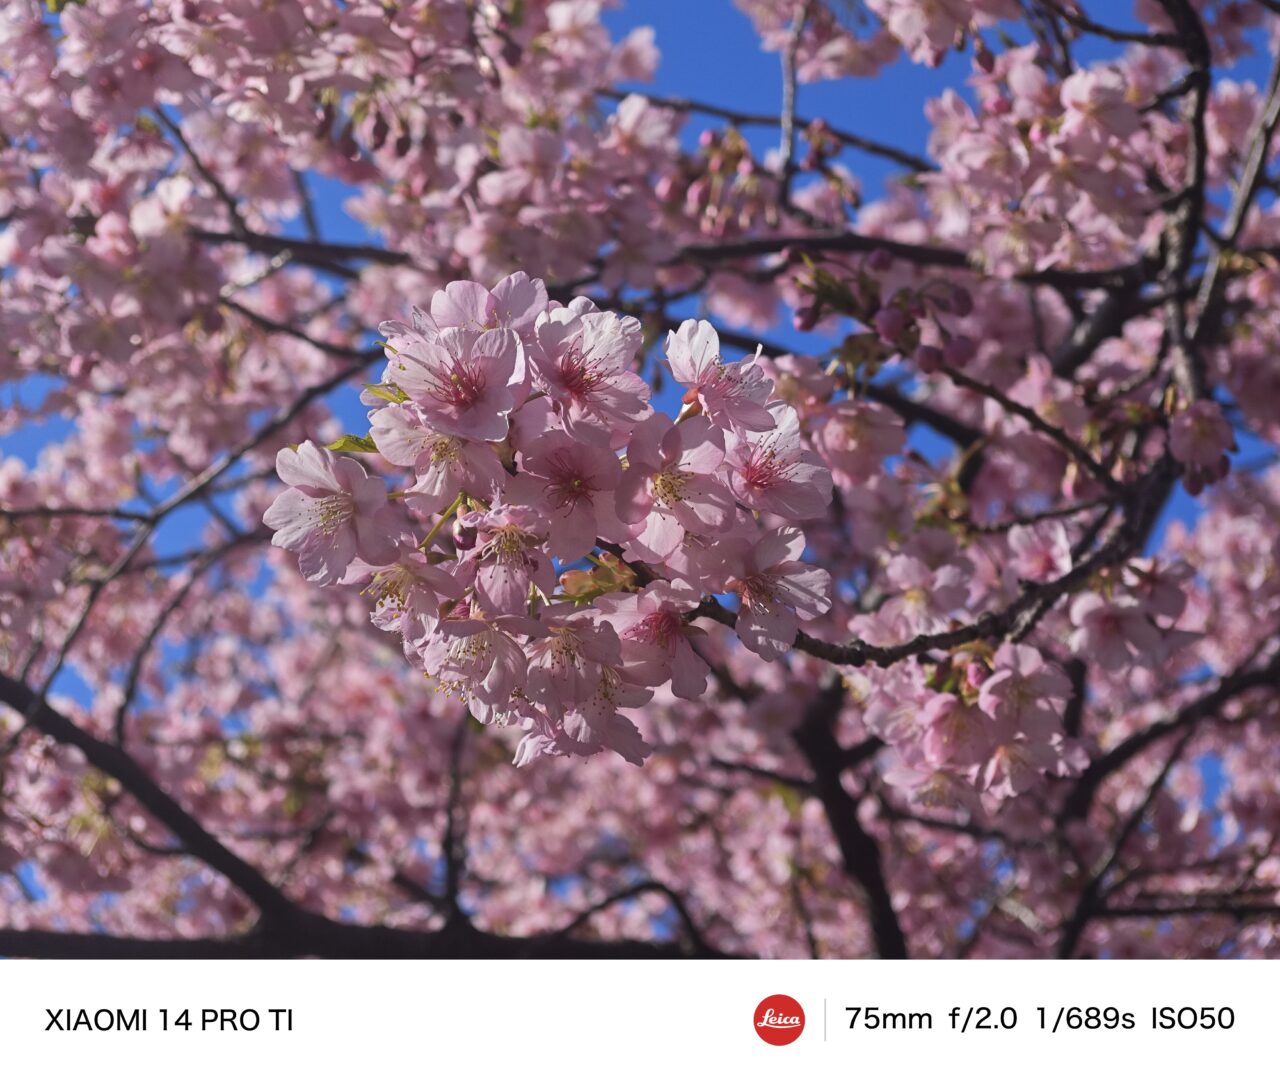 Xiaomi 14 Proの撮影画像。テレマクロその1。